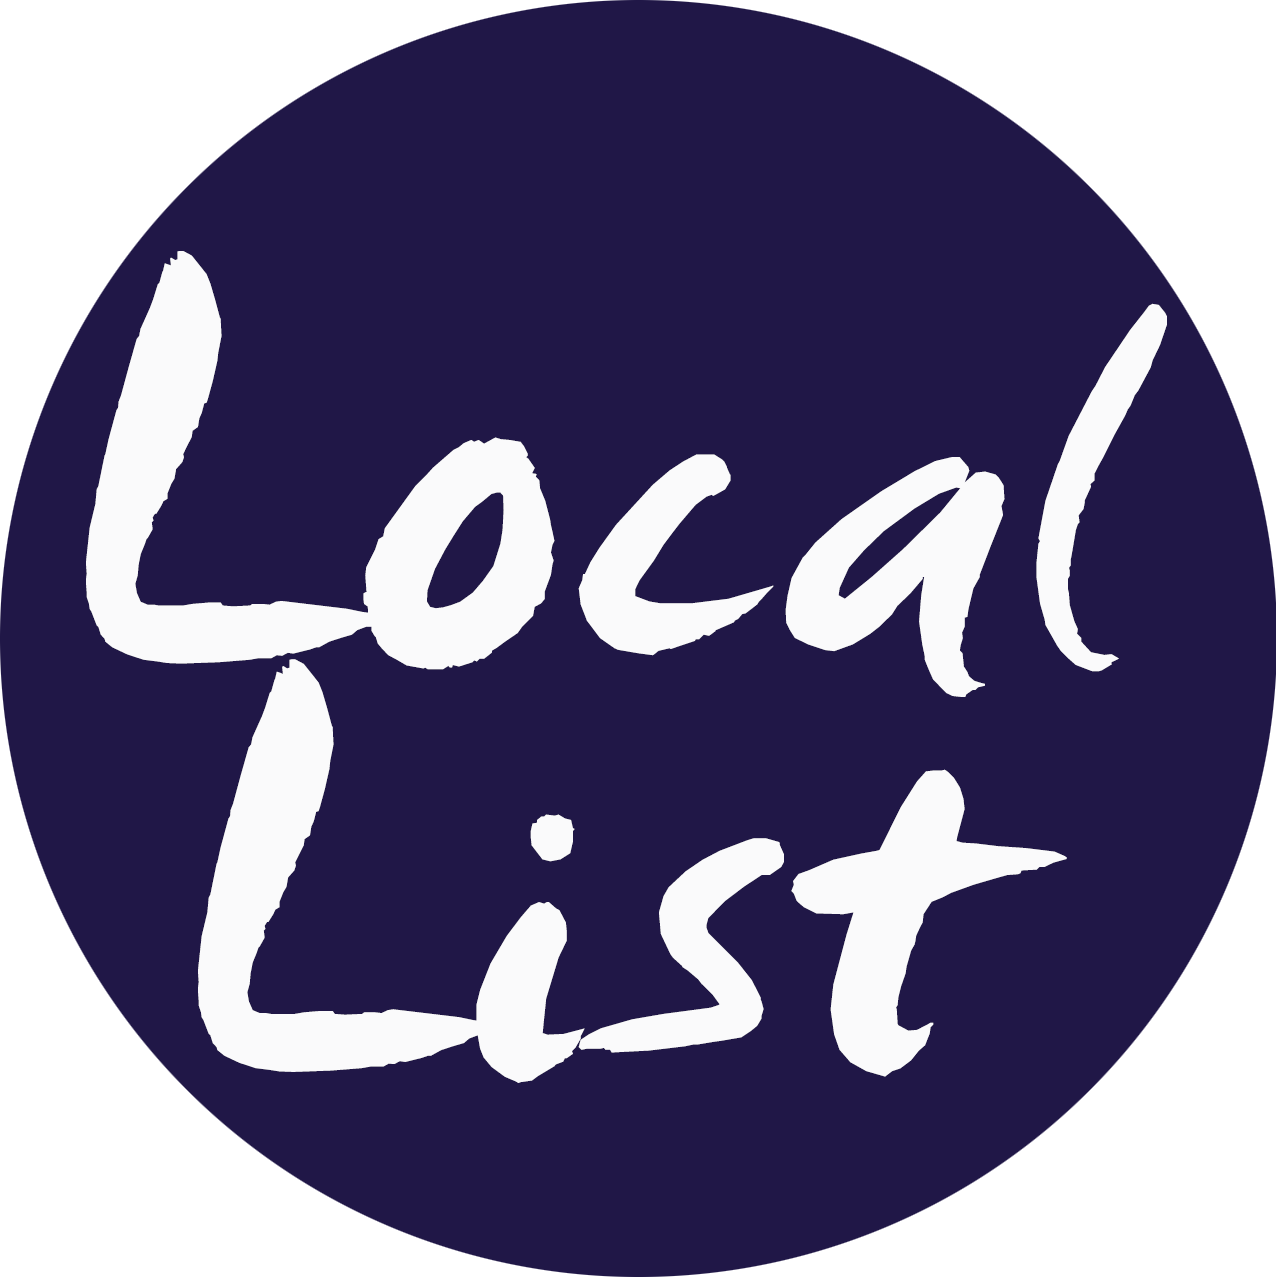 Local List Online